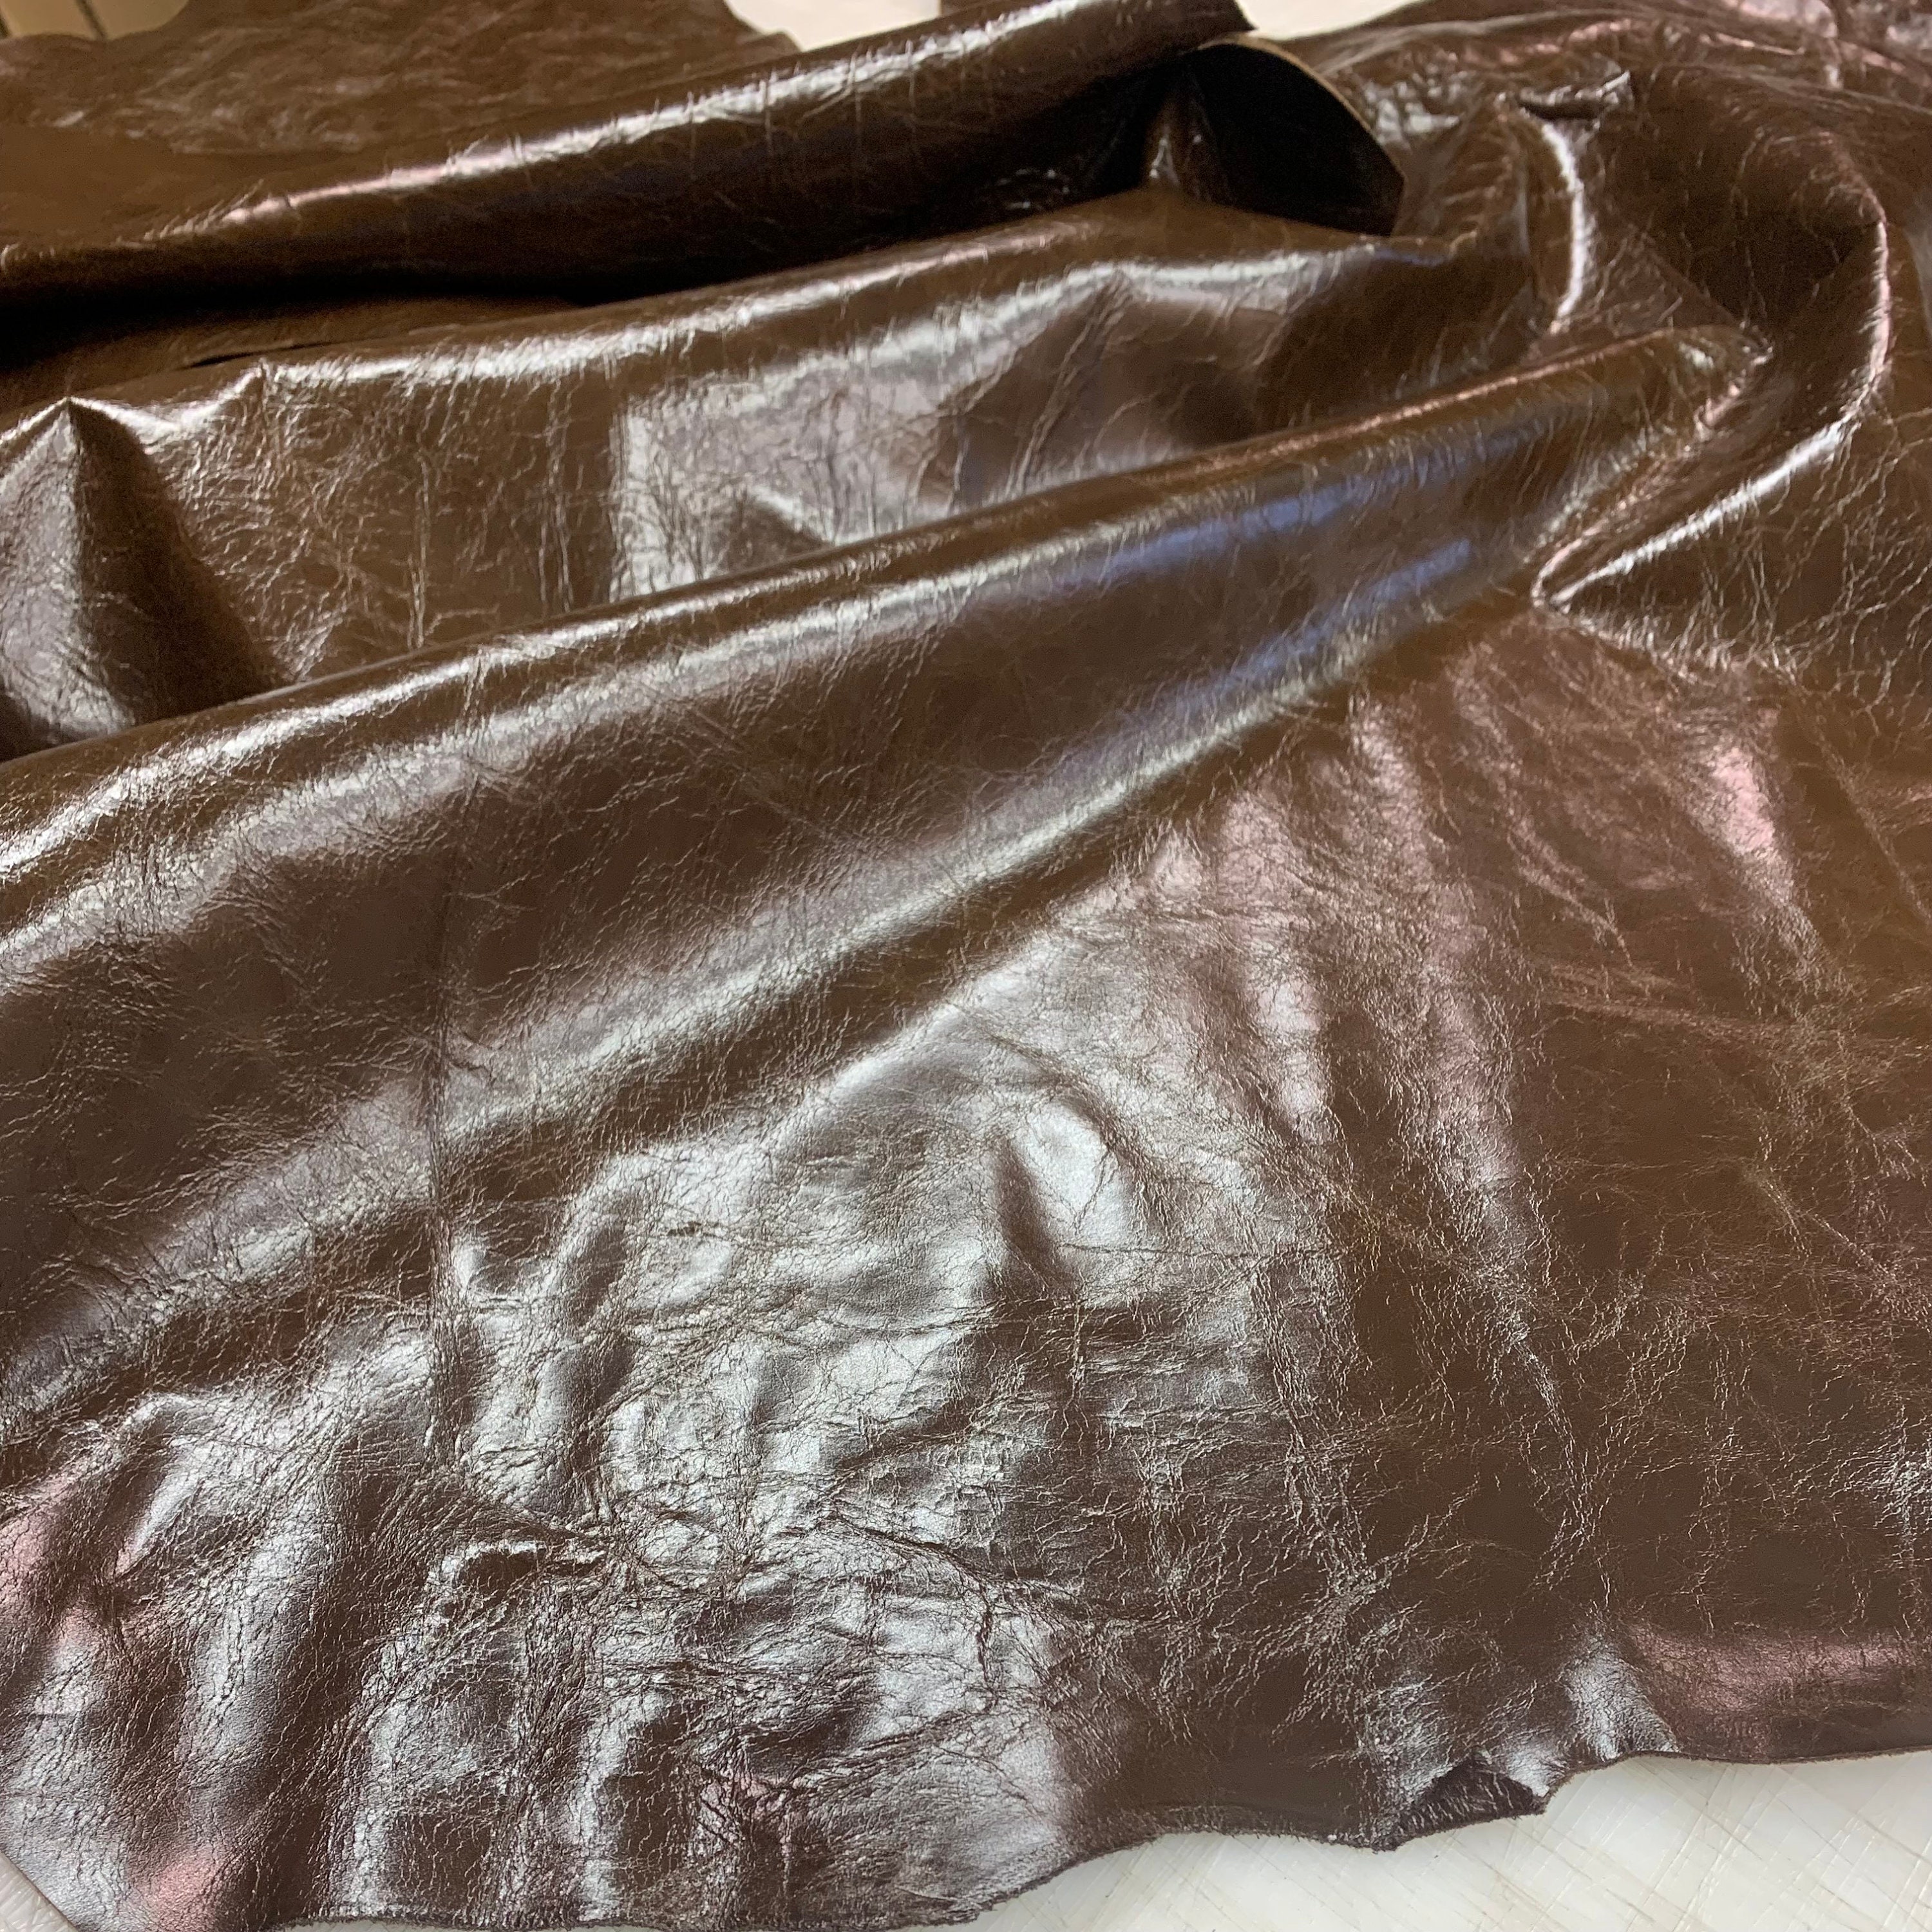 Oil Tan Leather Scrap - 5lbs